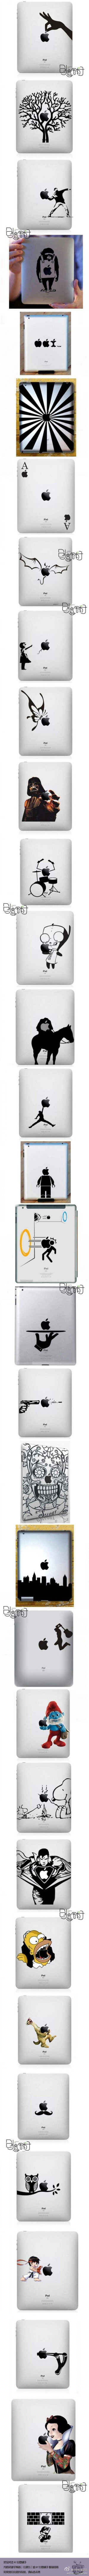 国外牛人在iPad外壳上的创意涂鸦~手绘达人们也试试吧~（